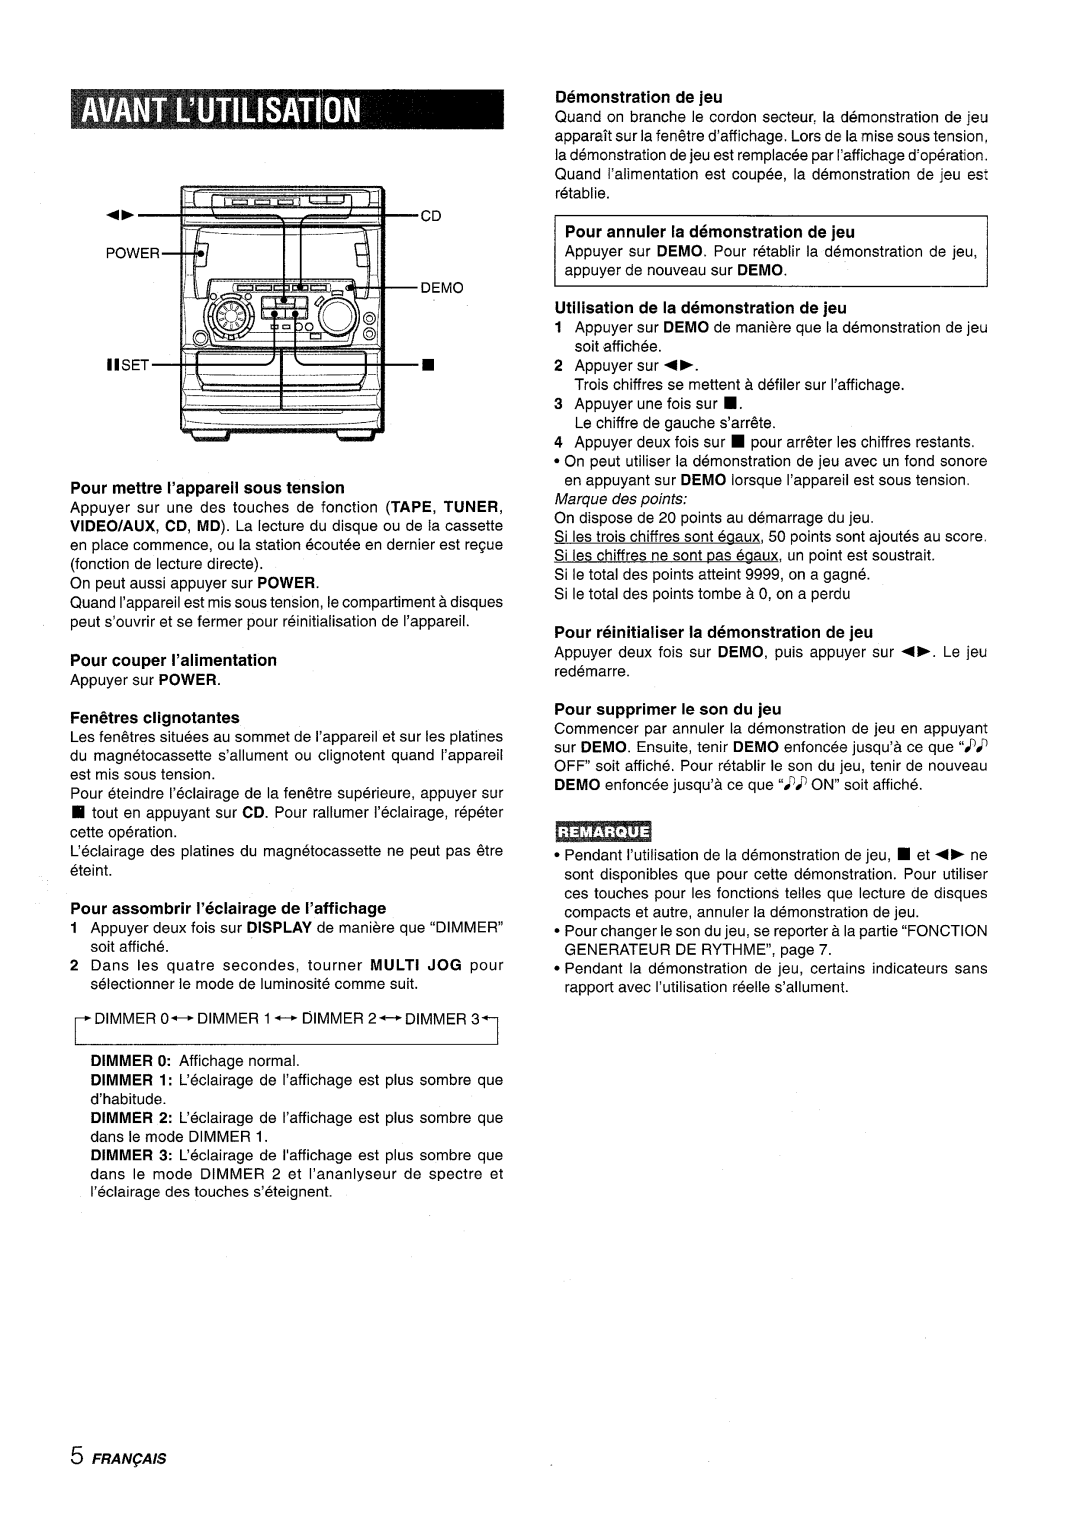 Sony NSX-A707 manual Marque des points, ~ Fraiv~Ais 